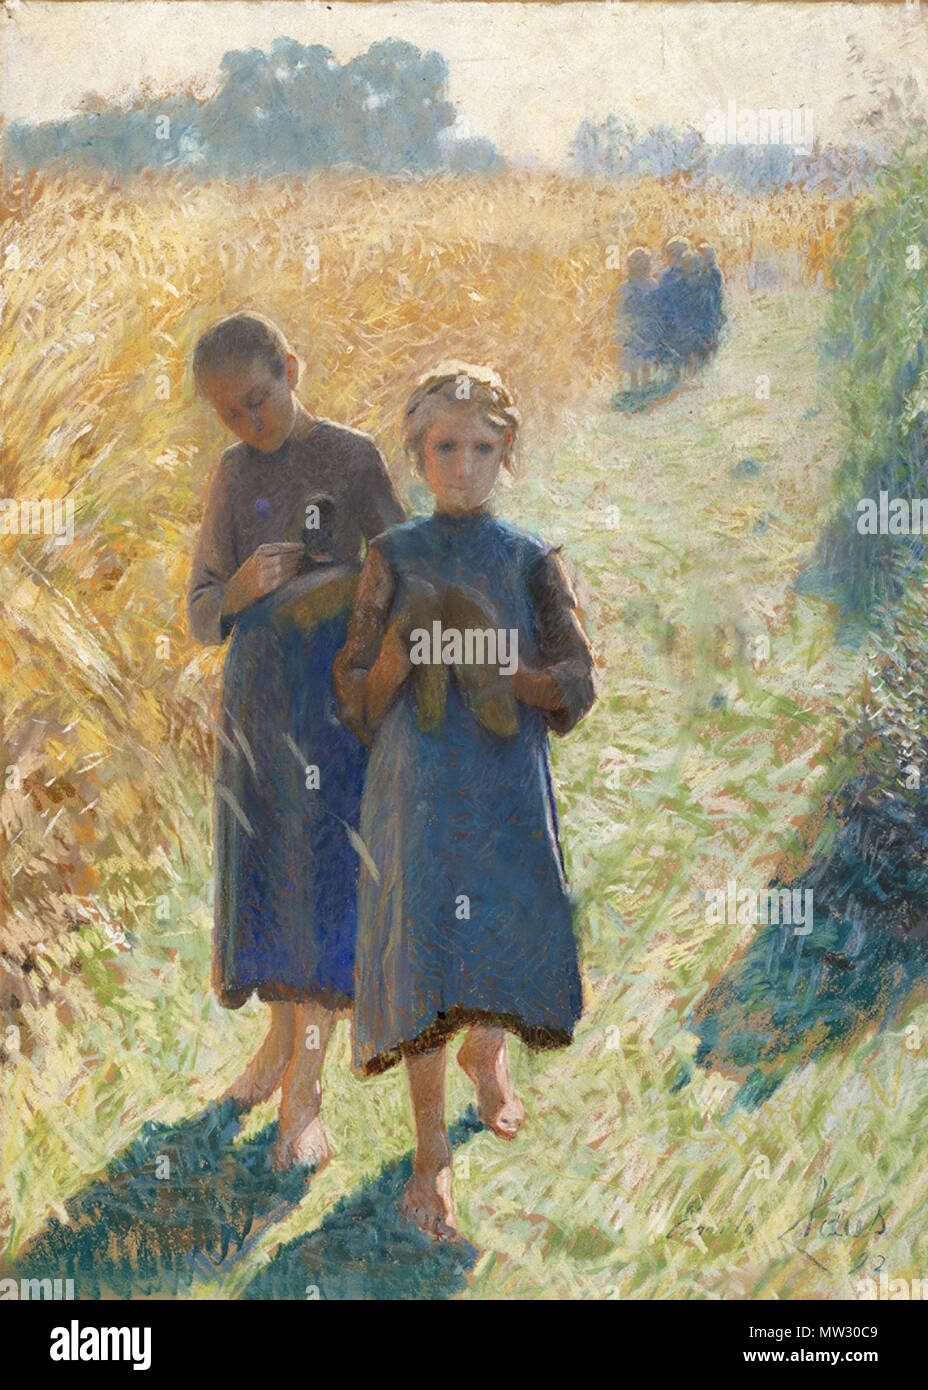 . Anglais : peinture impressionniste belge par Emile Claus. 27 août 2009, 10:15:52. Emile Claus (1849-1924) 185 Emile Clause - Country Life Banque D'Images